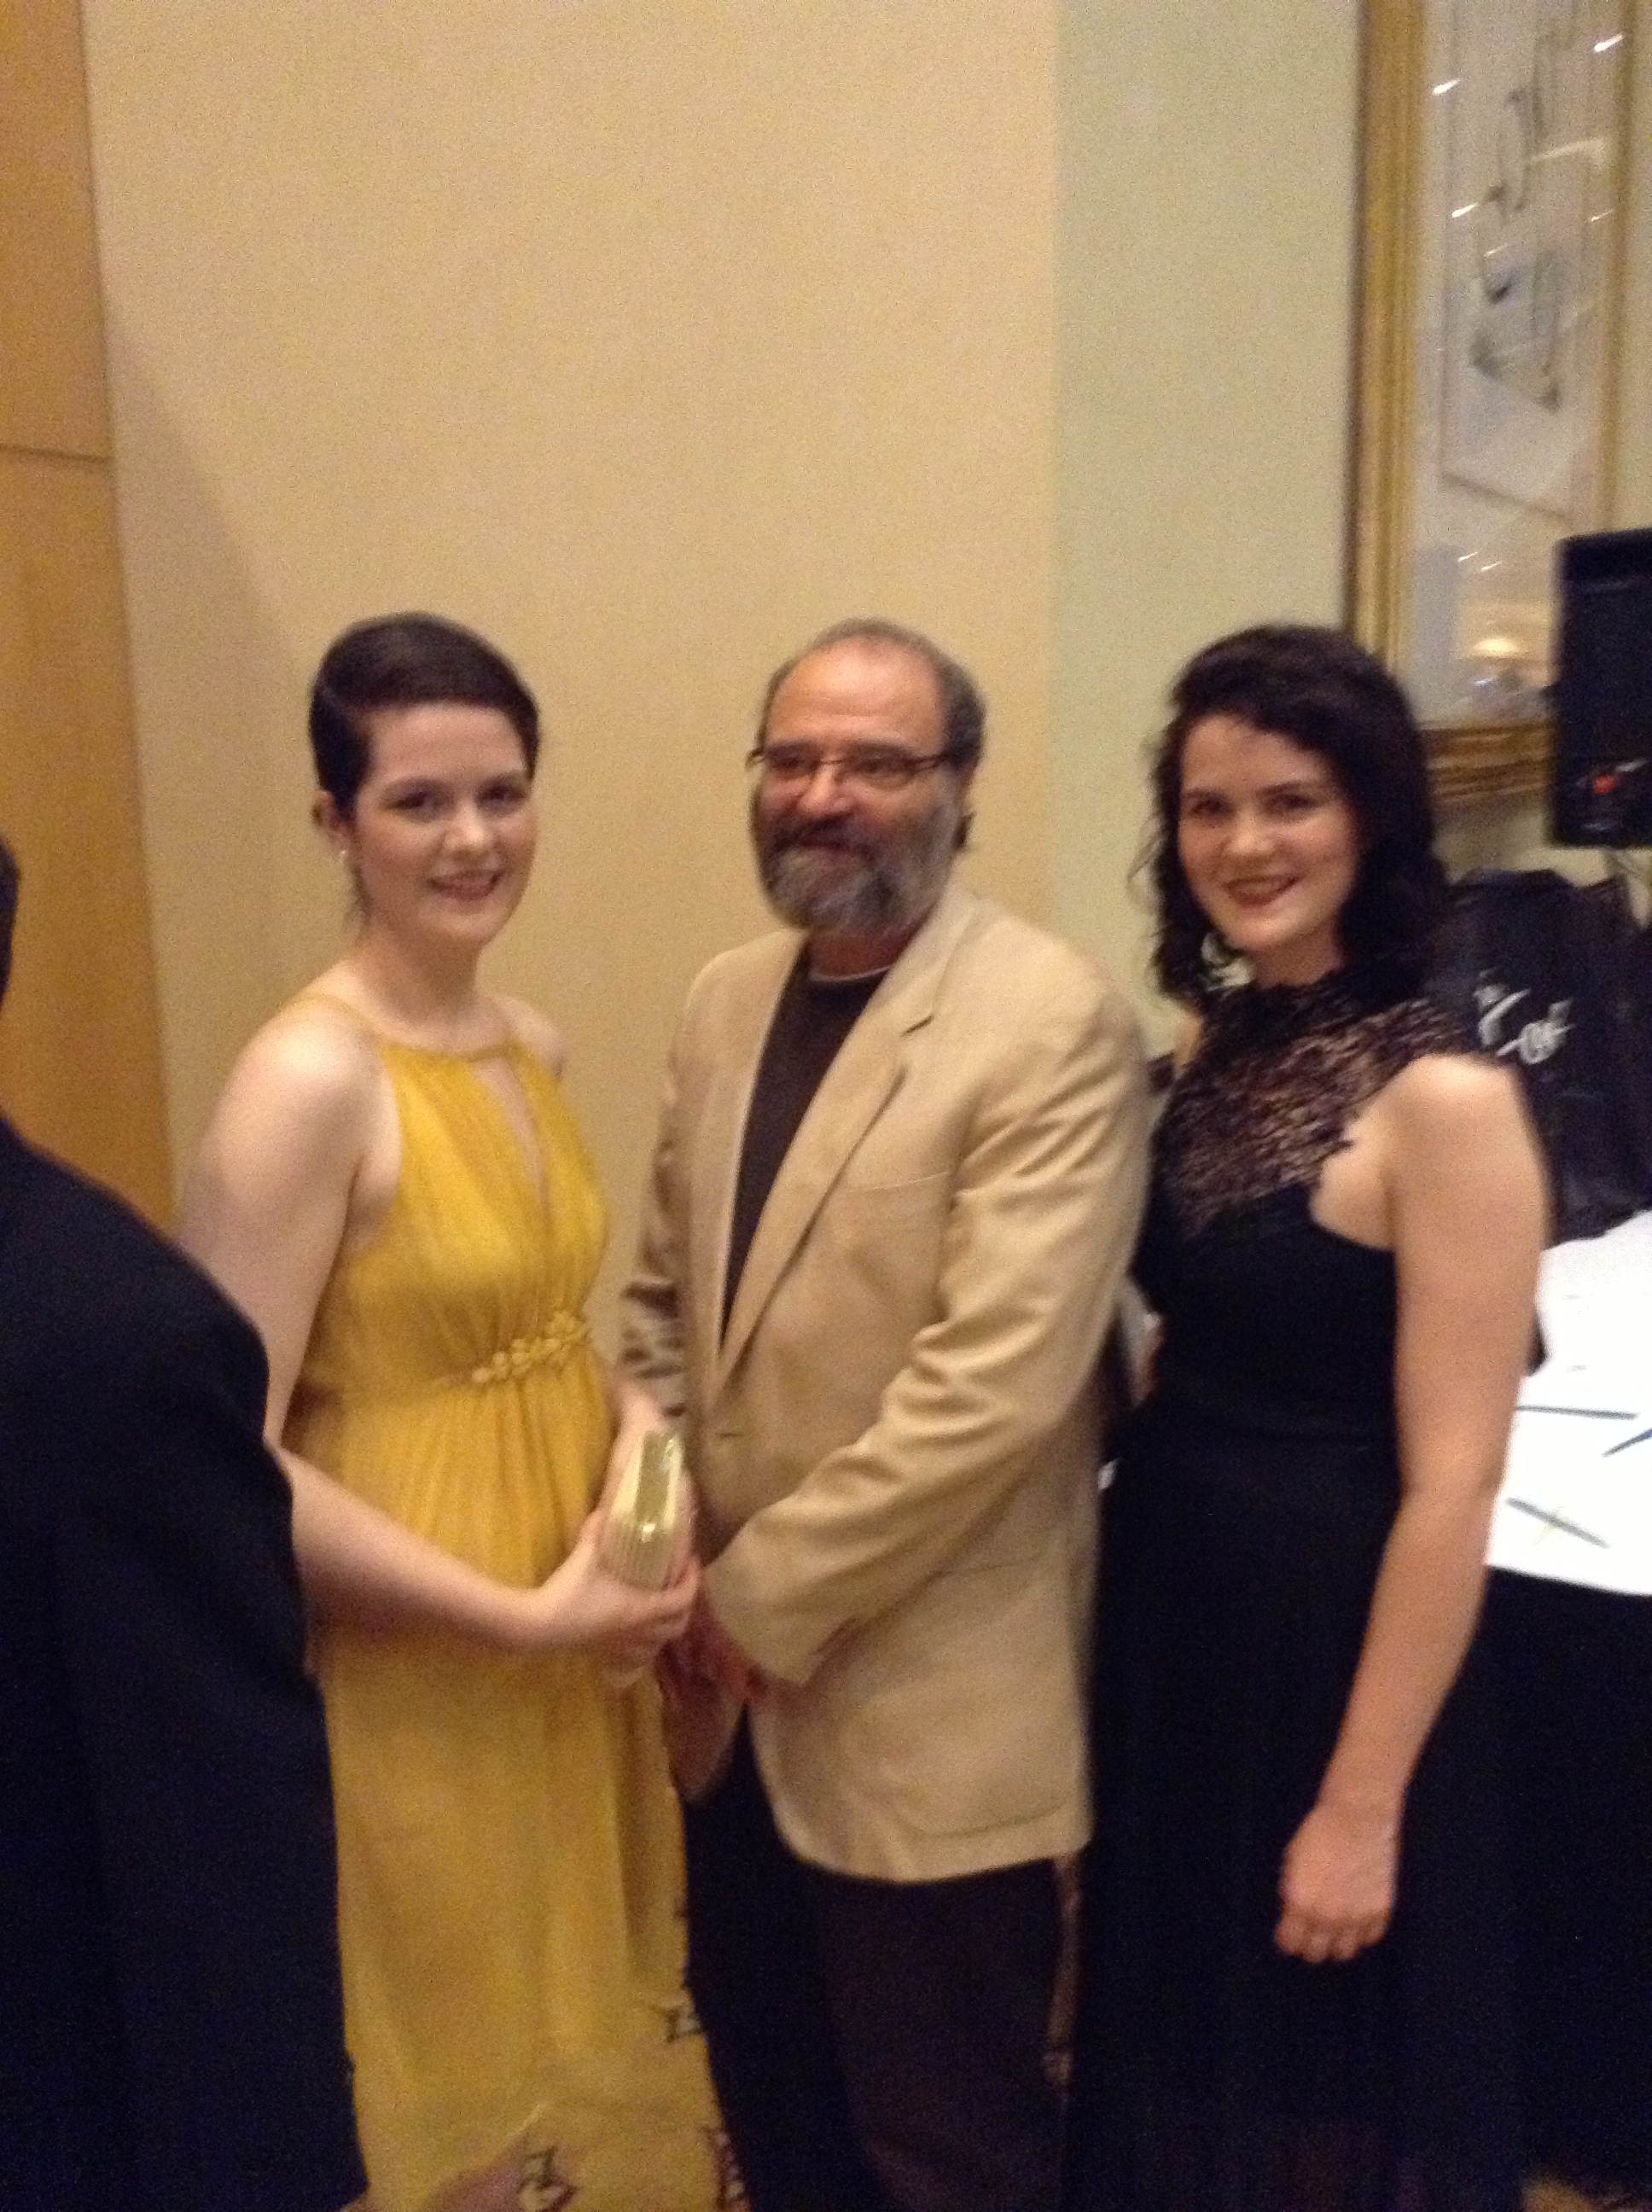 with Kailey & Samantha Spear, Leo Awards, 2013